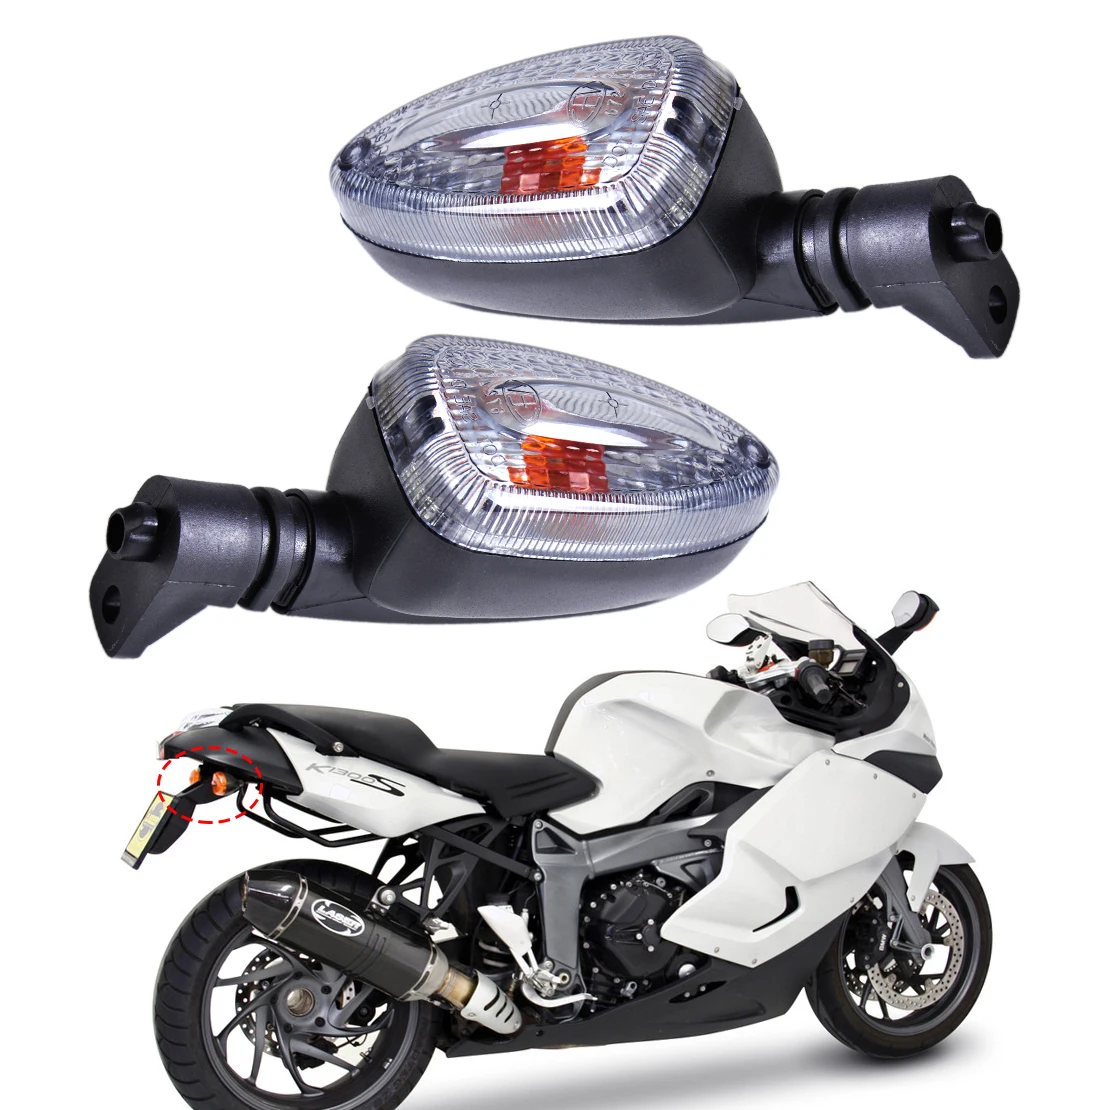 1 пара, световой сигнал поворота для мотоцикла, для BMW F650GS F800S K1300S R1200R G450X R1200GS K1200R F800ST